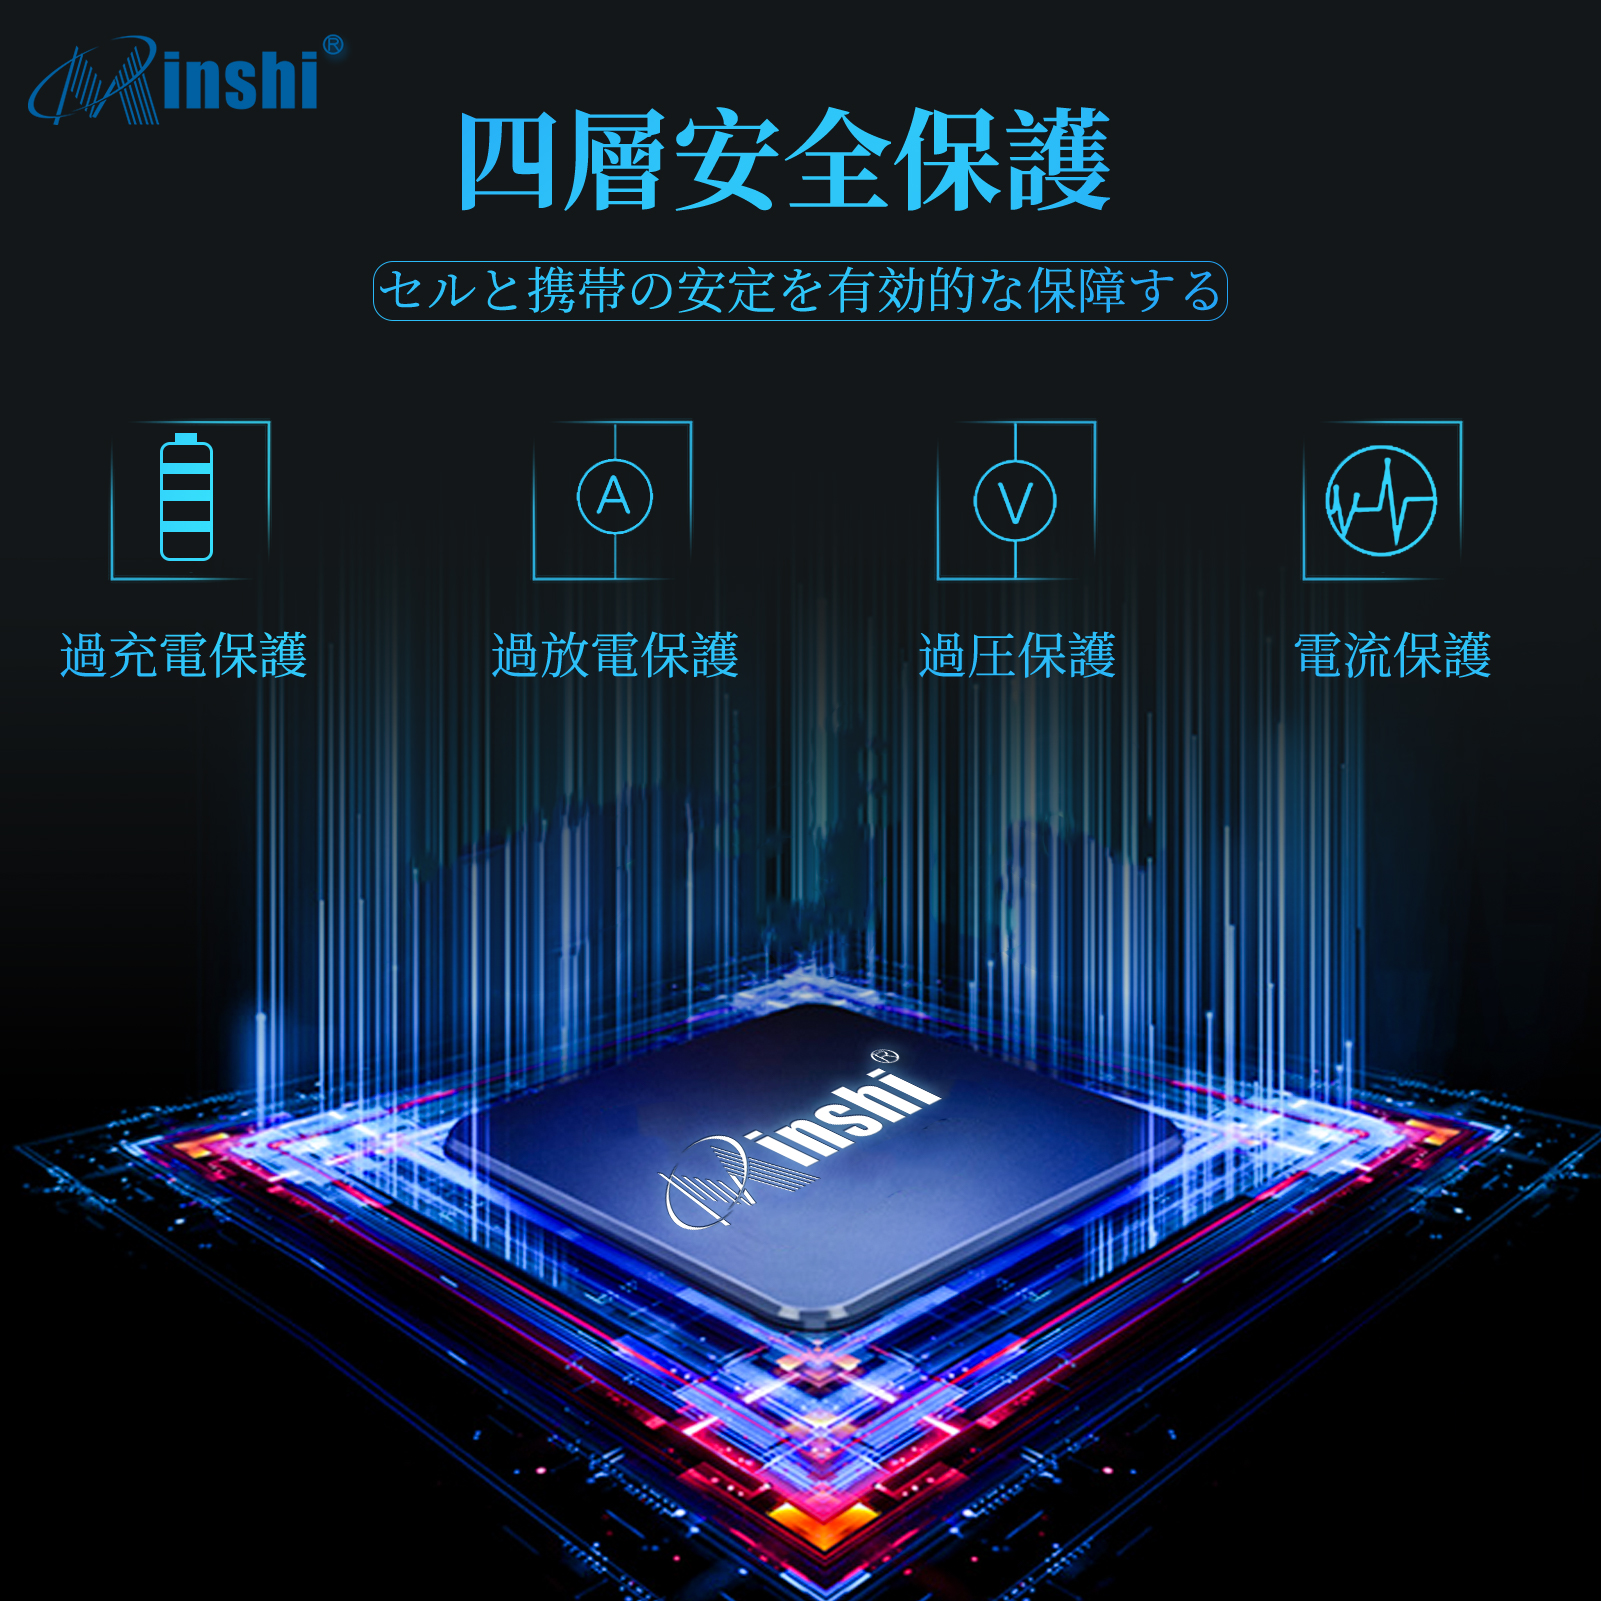 minshi ZTE AXON 7 SIM 対応 交換バッテリー 3140mAh 互換バッテリー 取り付け工具セット説明書付き